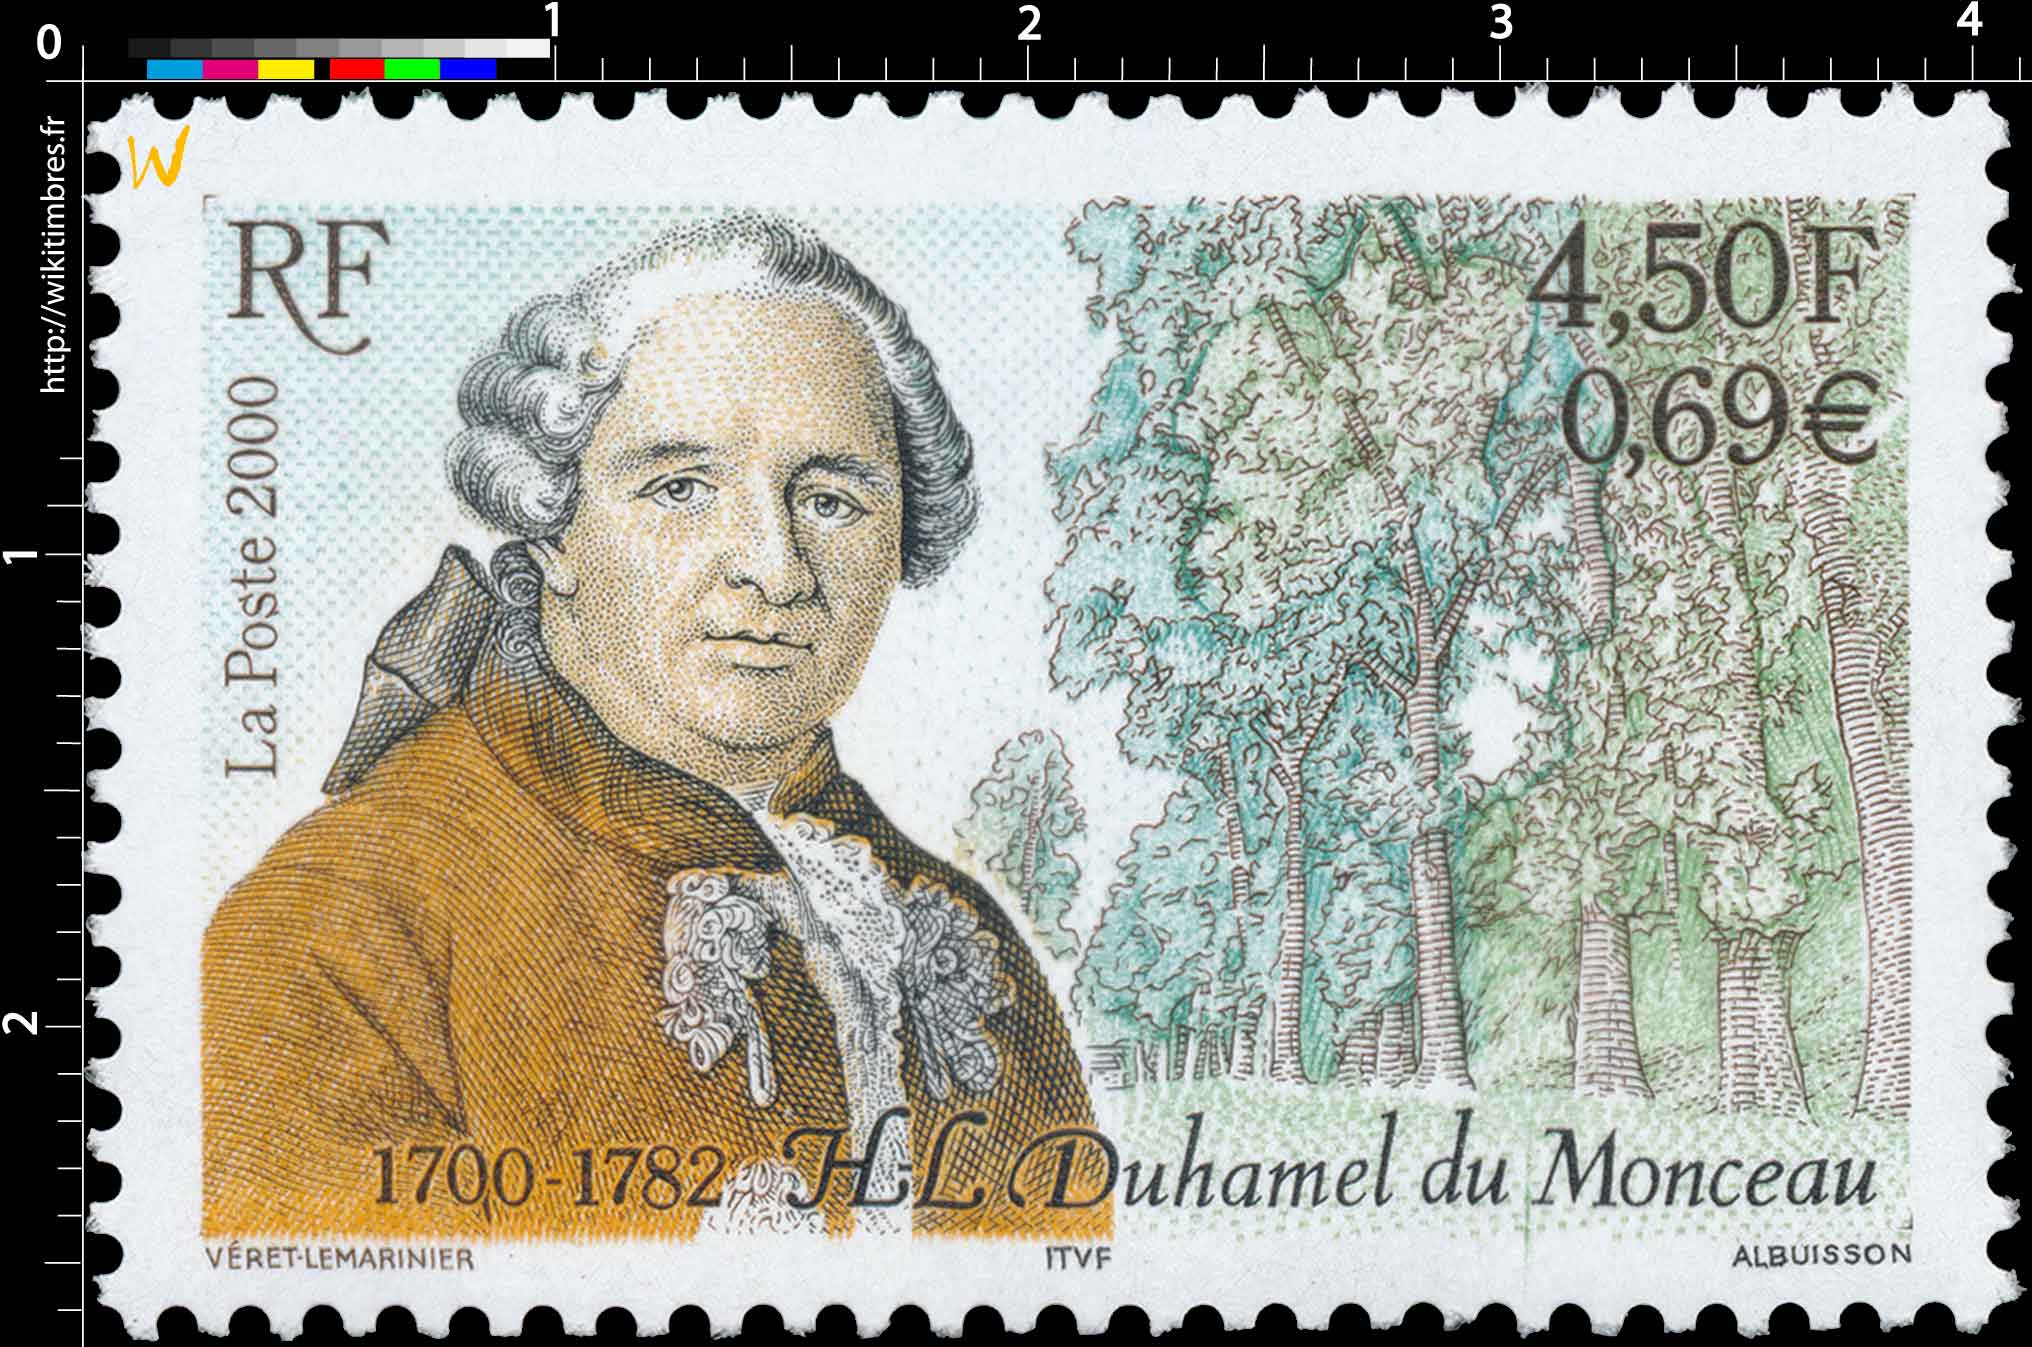 2000 H.L. Duhamel du Monceau 1700-1782